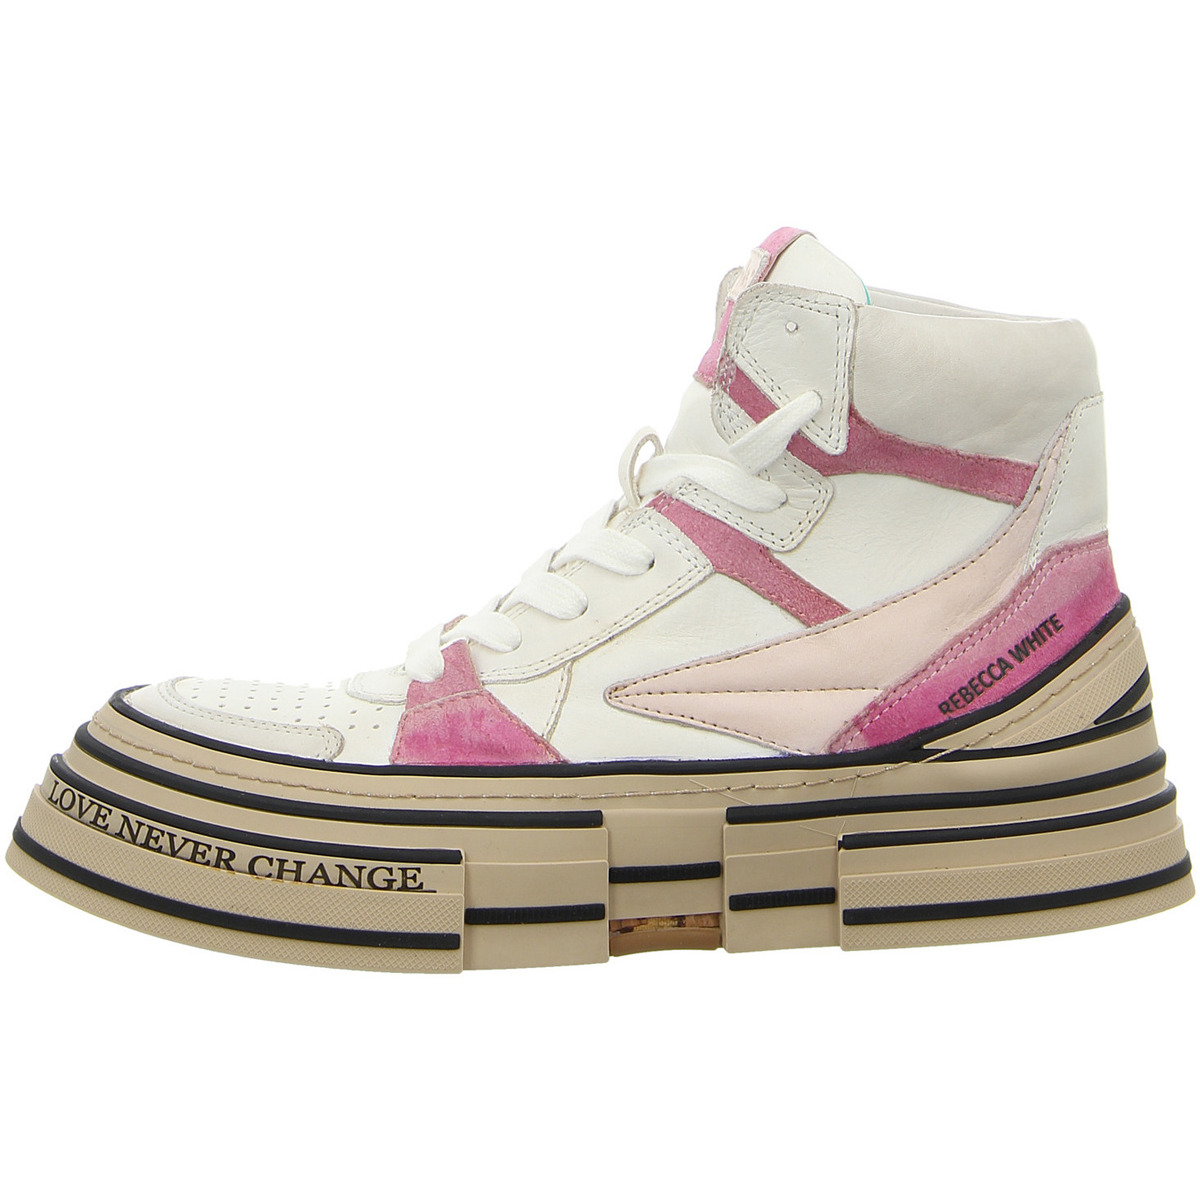 Schuhe Damen Sneaker Rebecca White Suede lavanda W16-2A.V2 Other